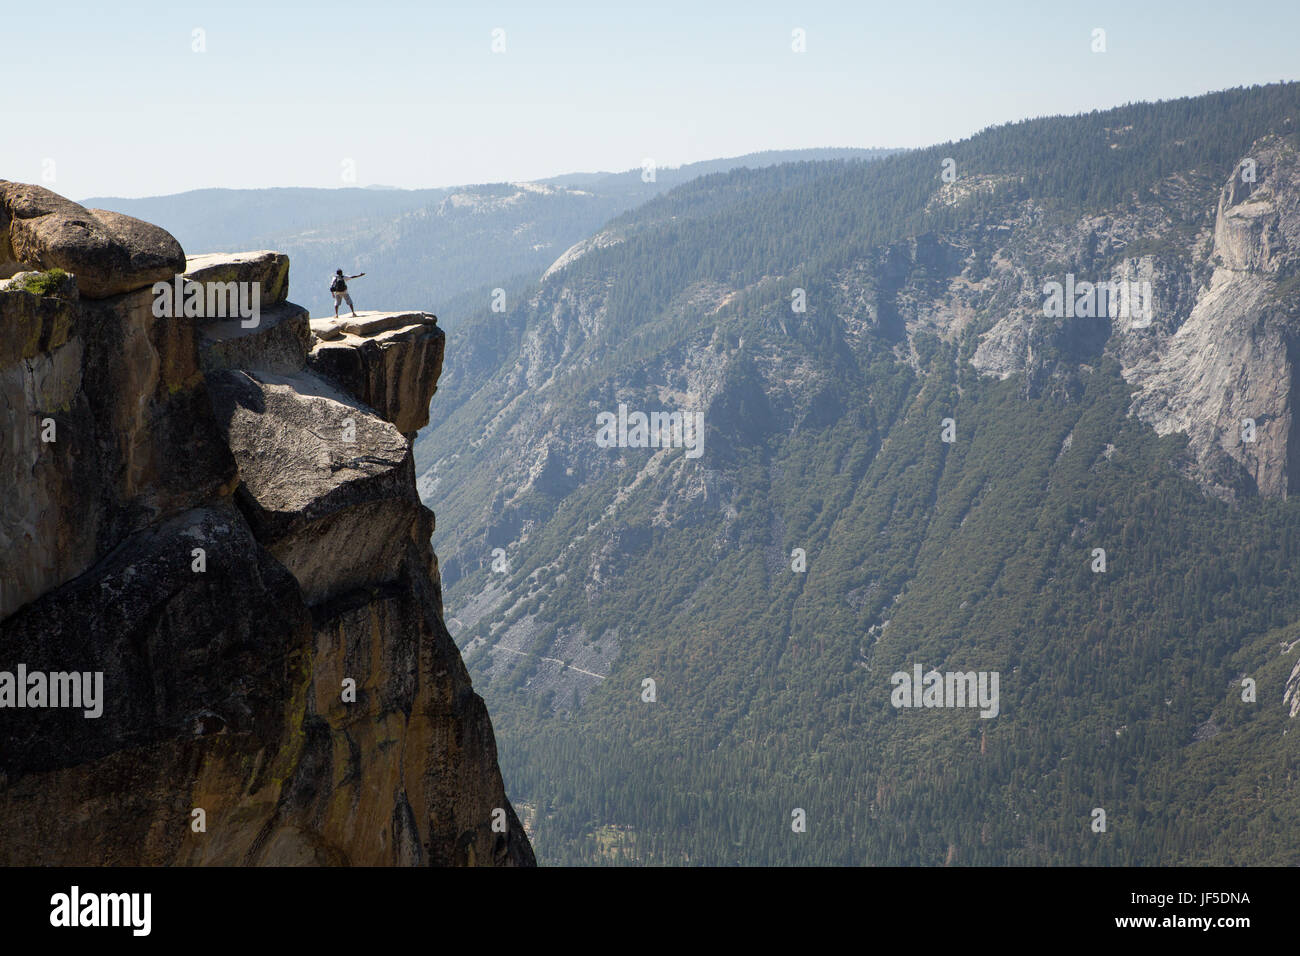 Un visitante al Parque Nacional de Yosemite se alza sobre una roca saliente en Taft Point. Esta cornisa, a una altitud de unos 7.500 pies, significa miles de pies por encima del Valle Yosemite. Foto de stock